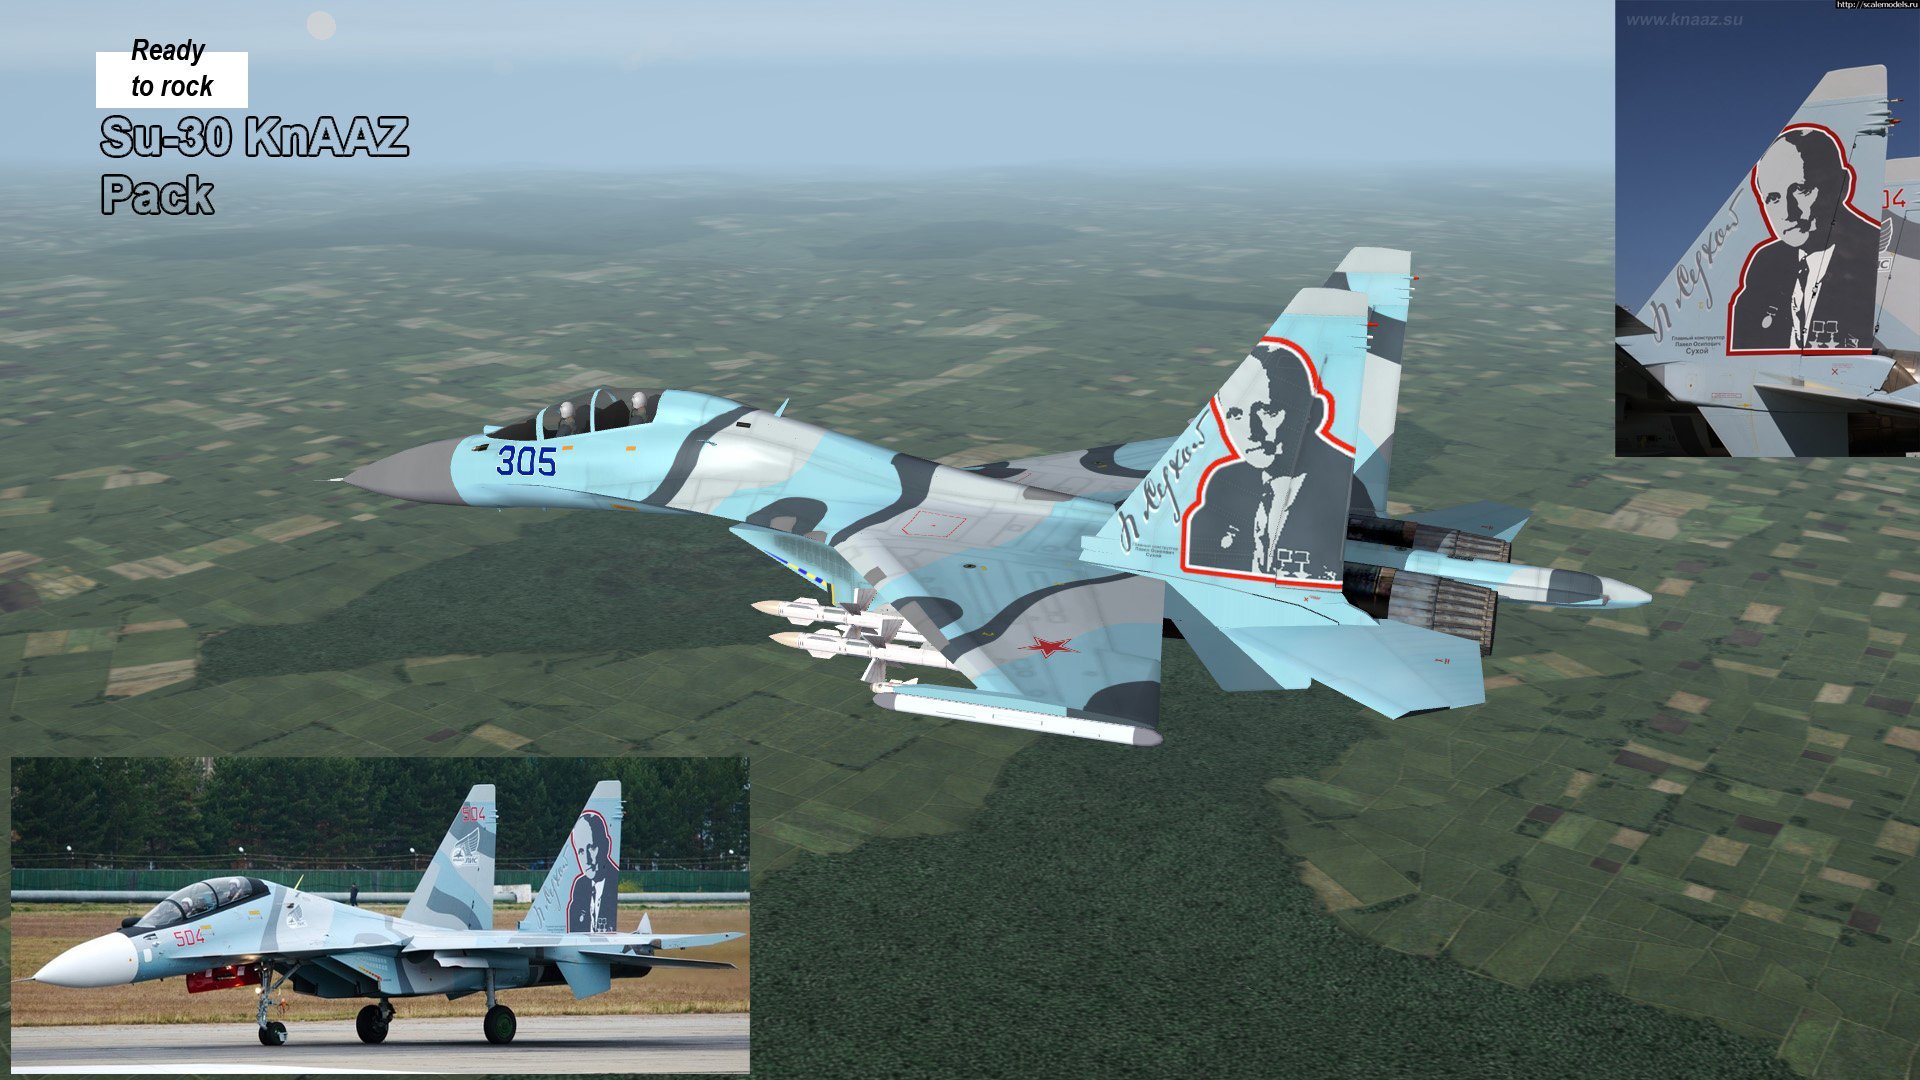 Su-30 by KnAAZ Avia Plant (Part II)